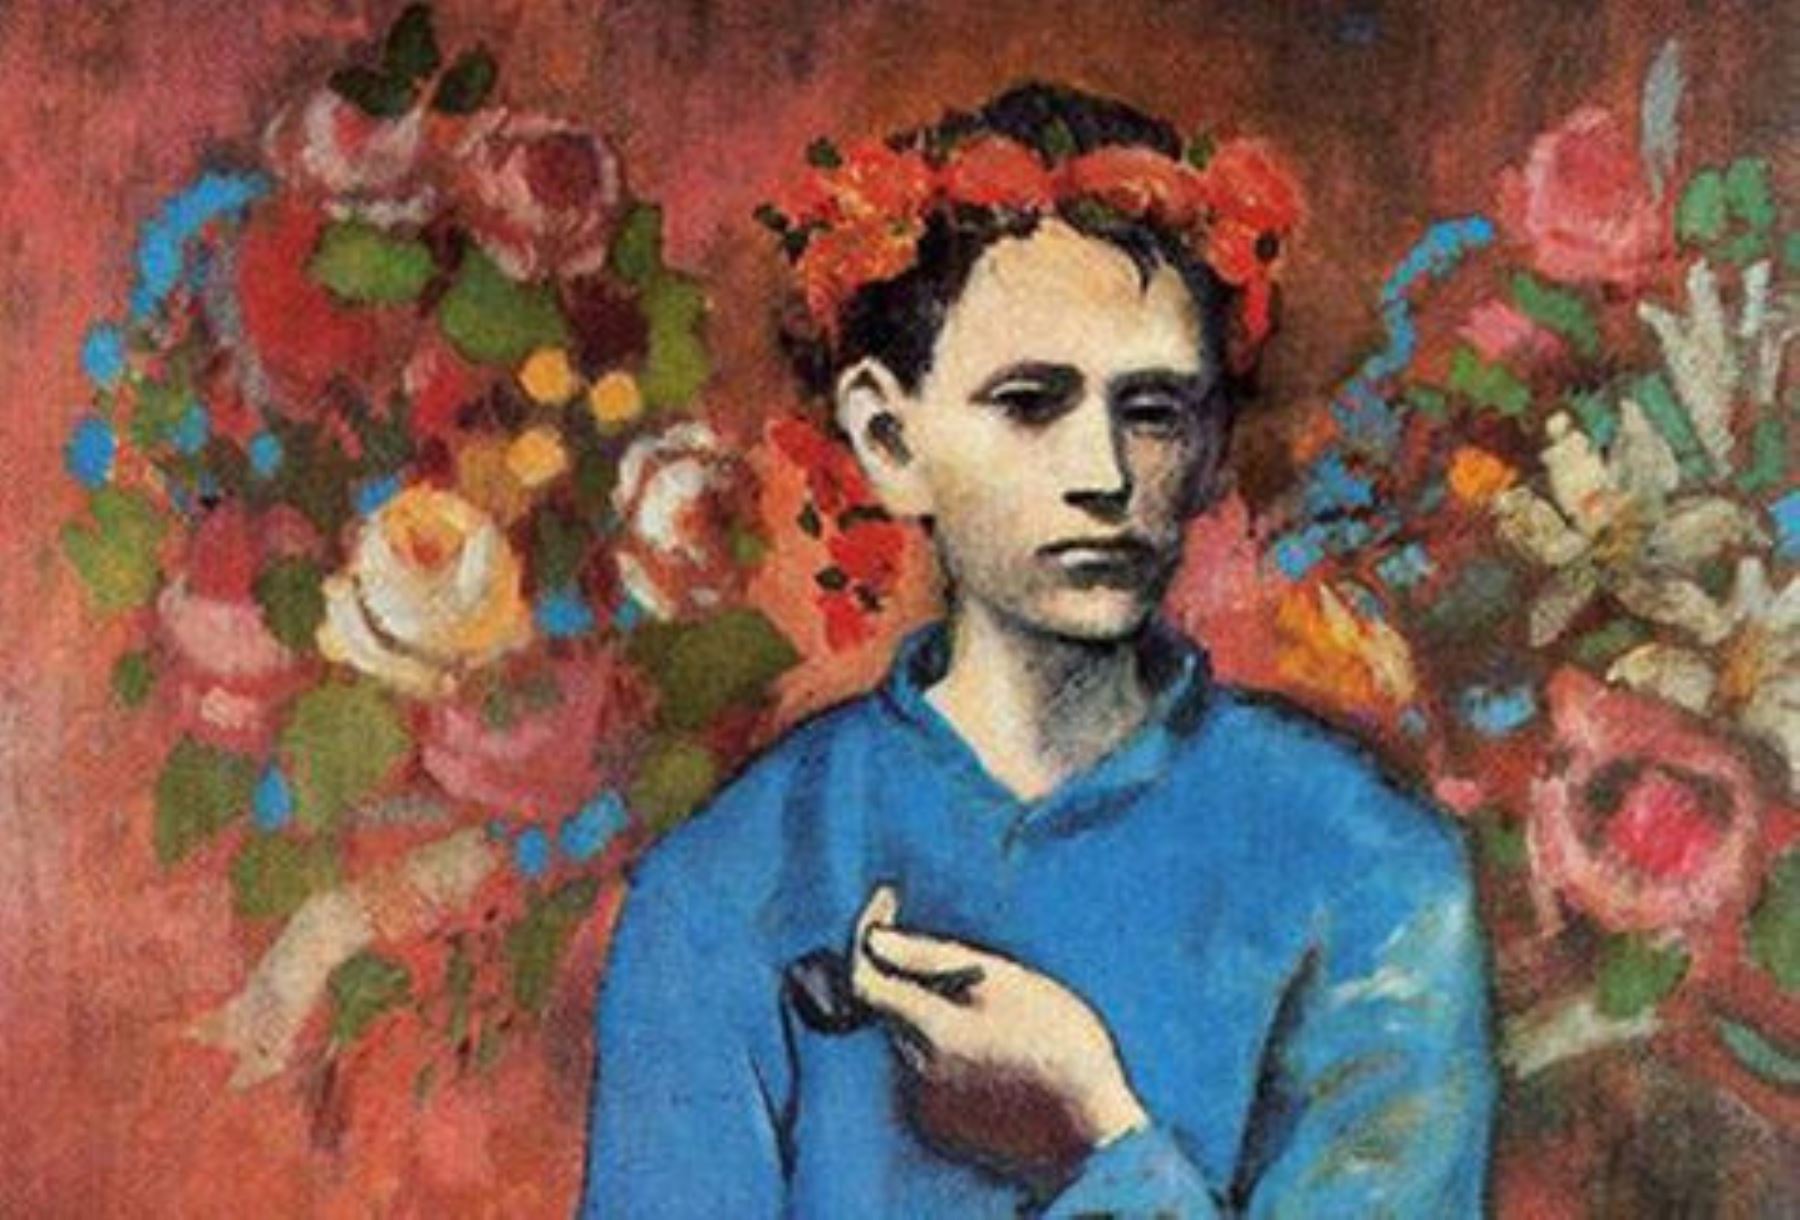 8- Pablo Picasso, "Muchacho con pipa", 104,16 millones de dólares el 5 de mayo de 2004 en Sotheby